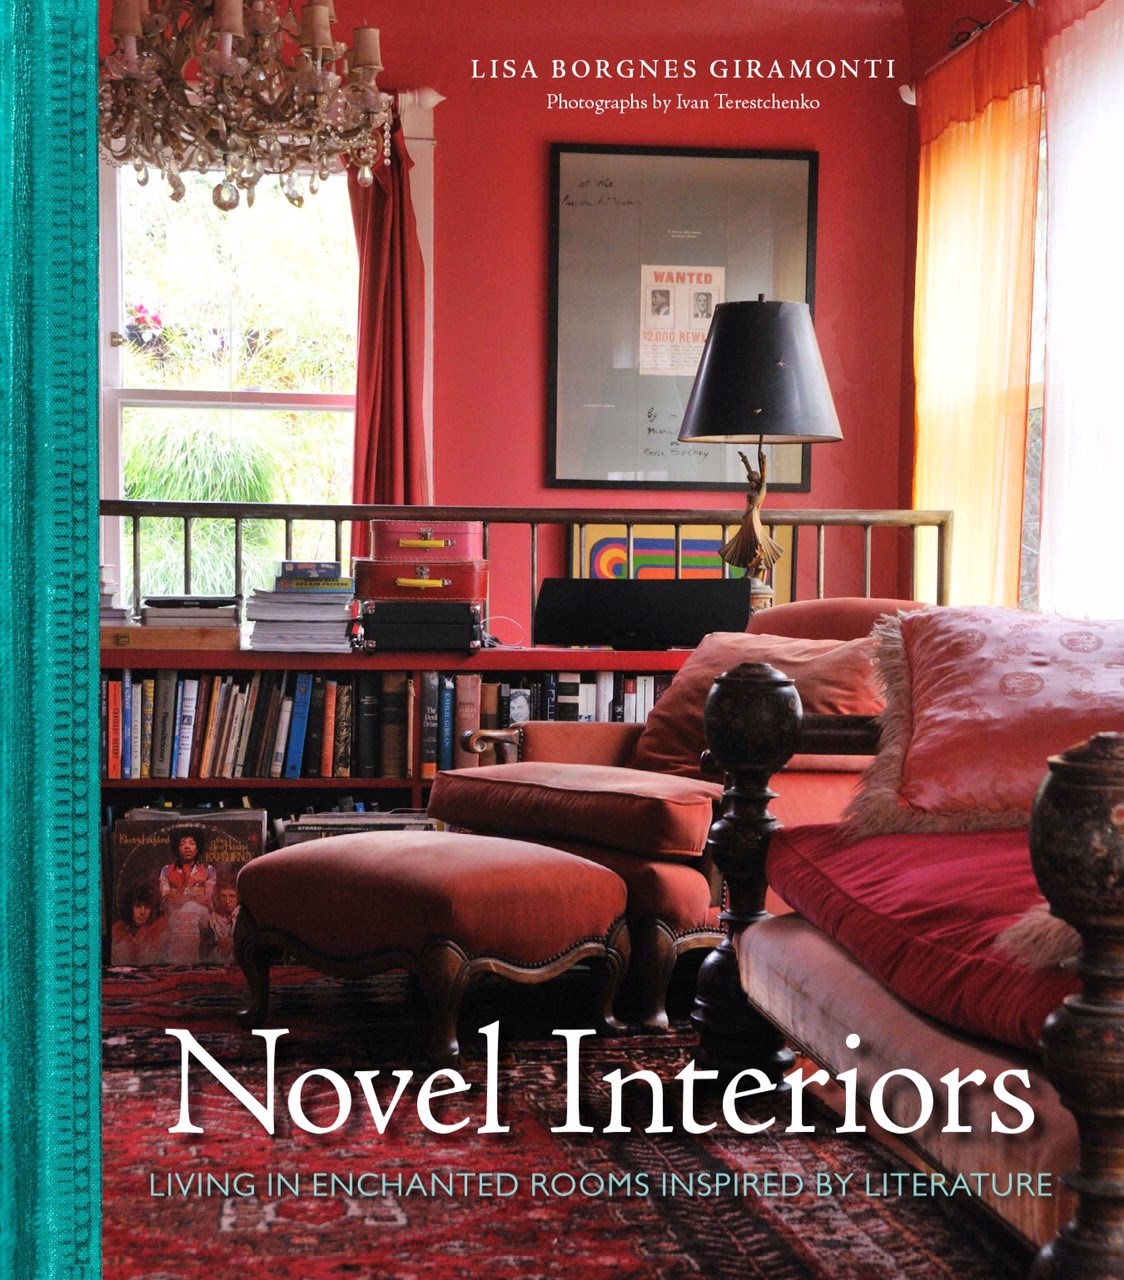 Novel Interiors. Random House, New York